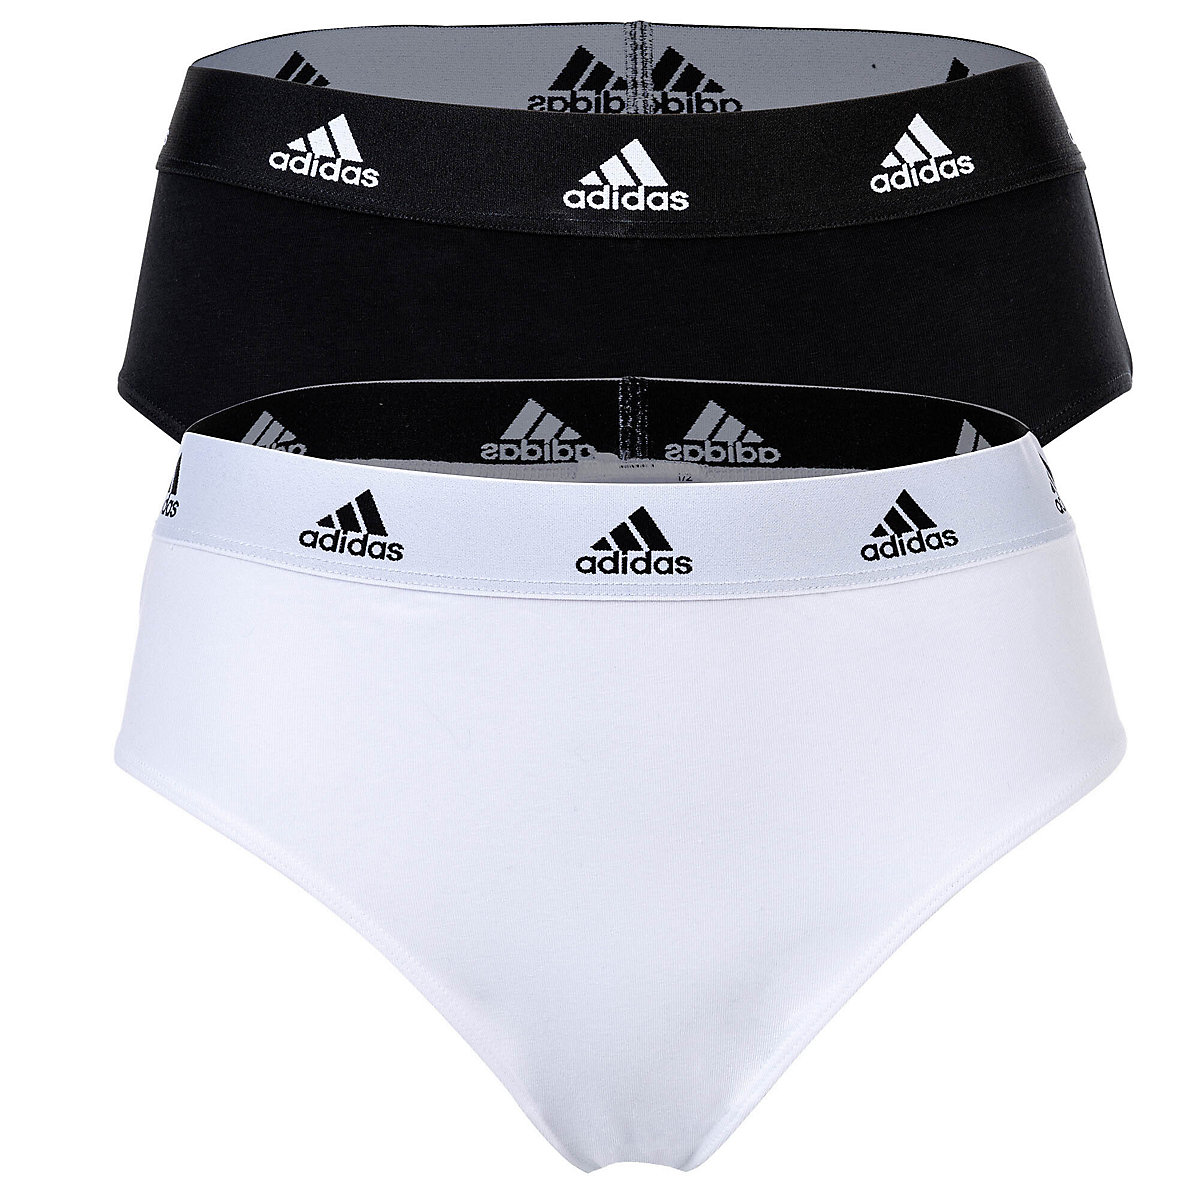 adidas Damen Slip 2er Pack Bikini 2PK Unterwäsche Cotton Stretch Logo uni Slips schwarz/weiß